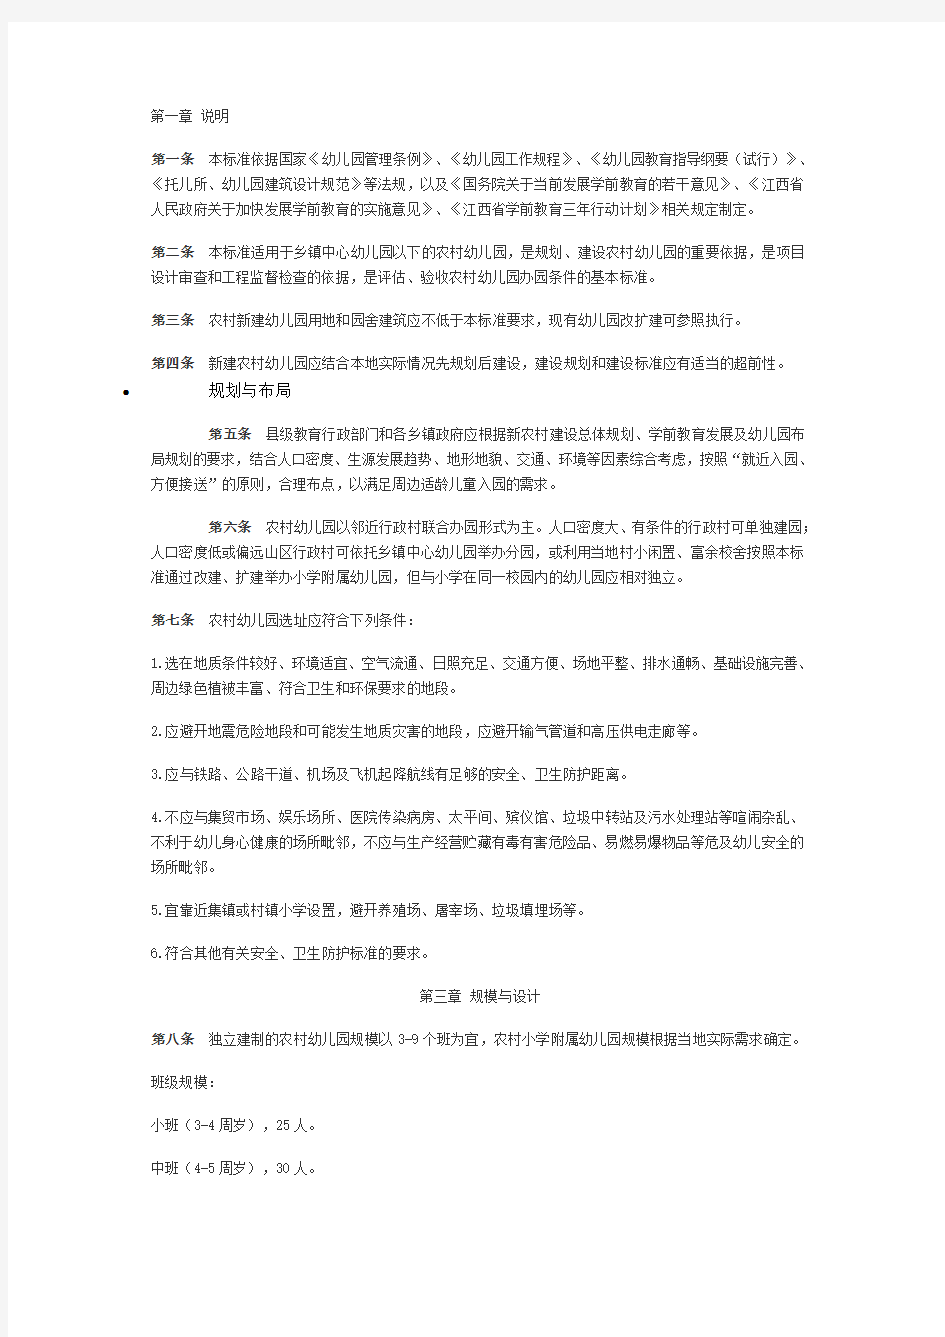 江西省农村幼儿园基本办园条件标准